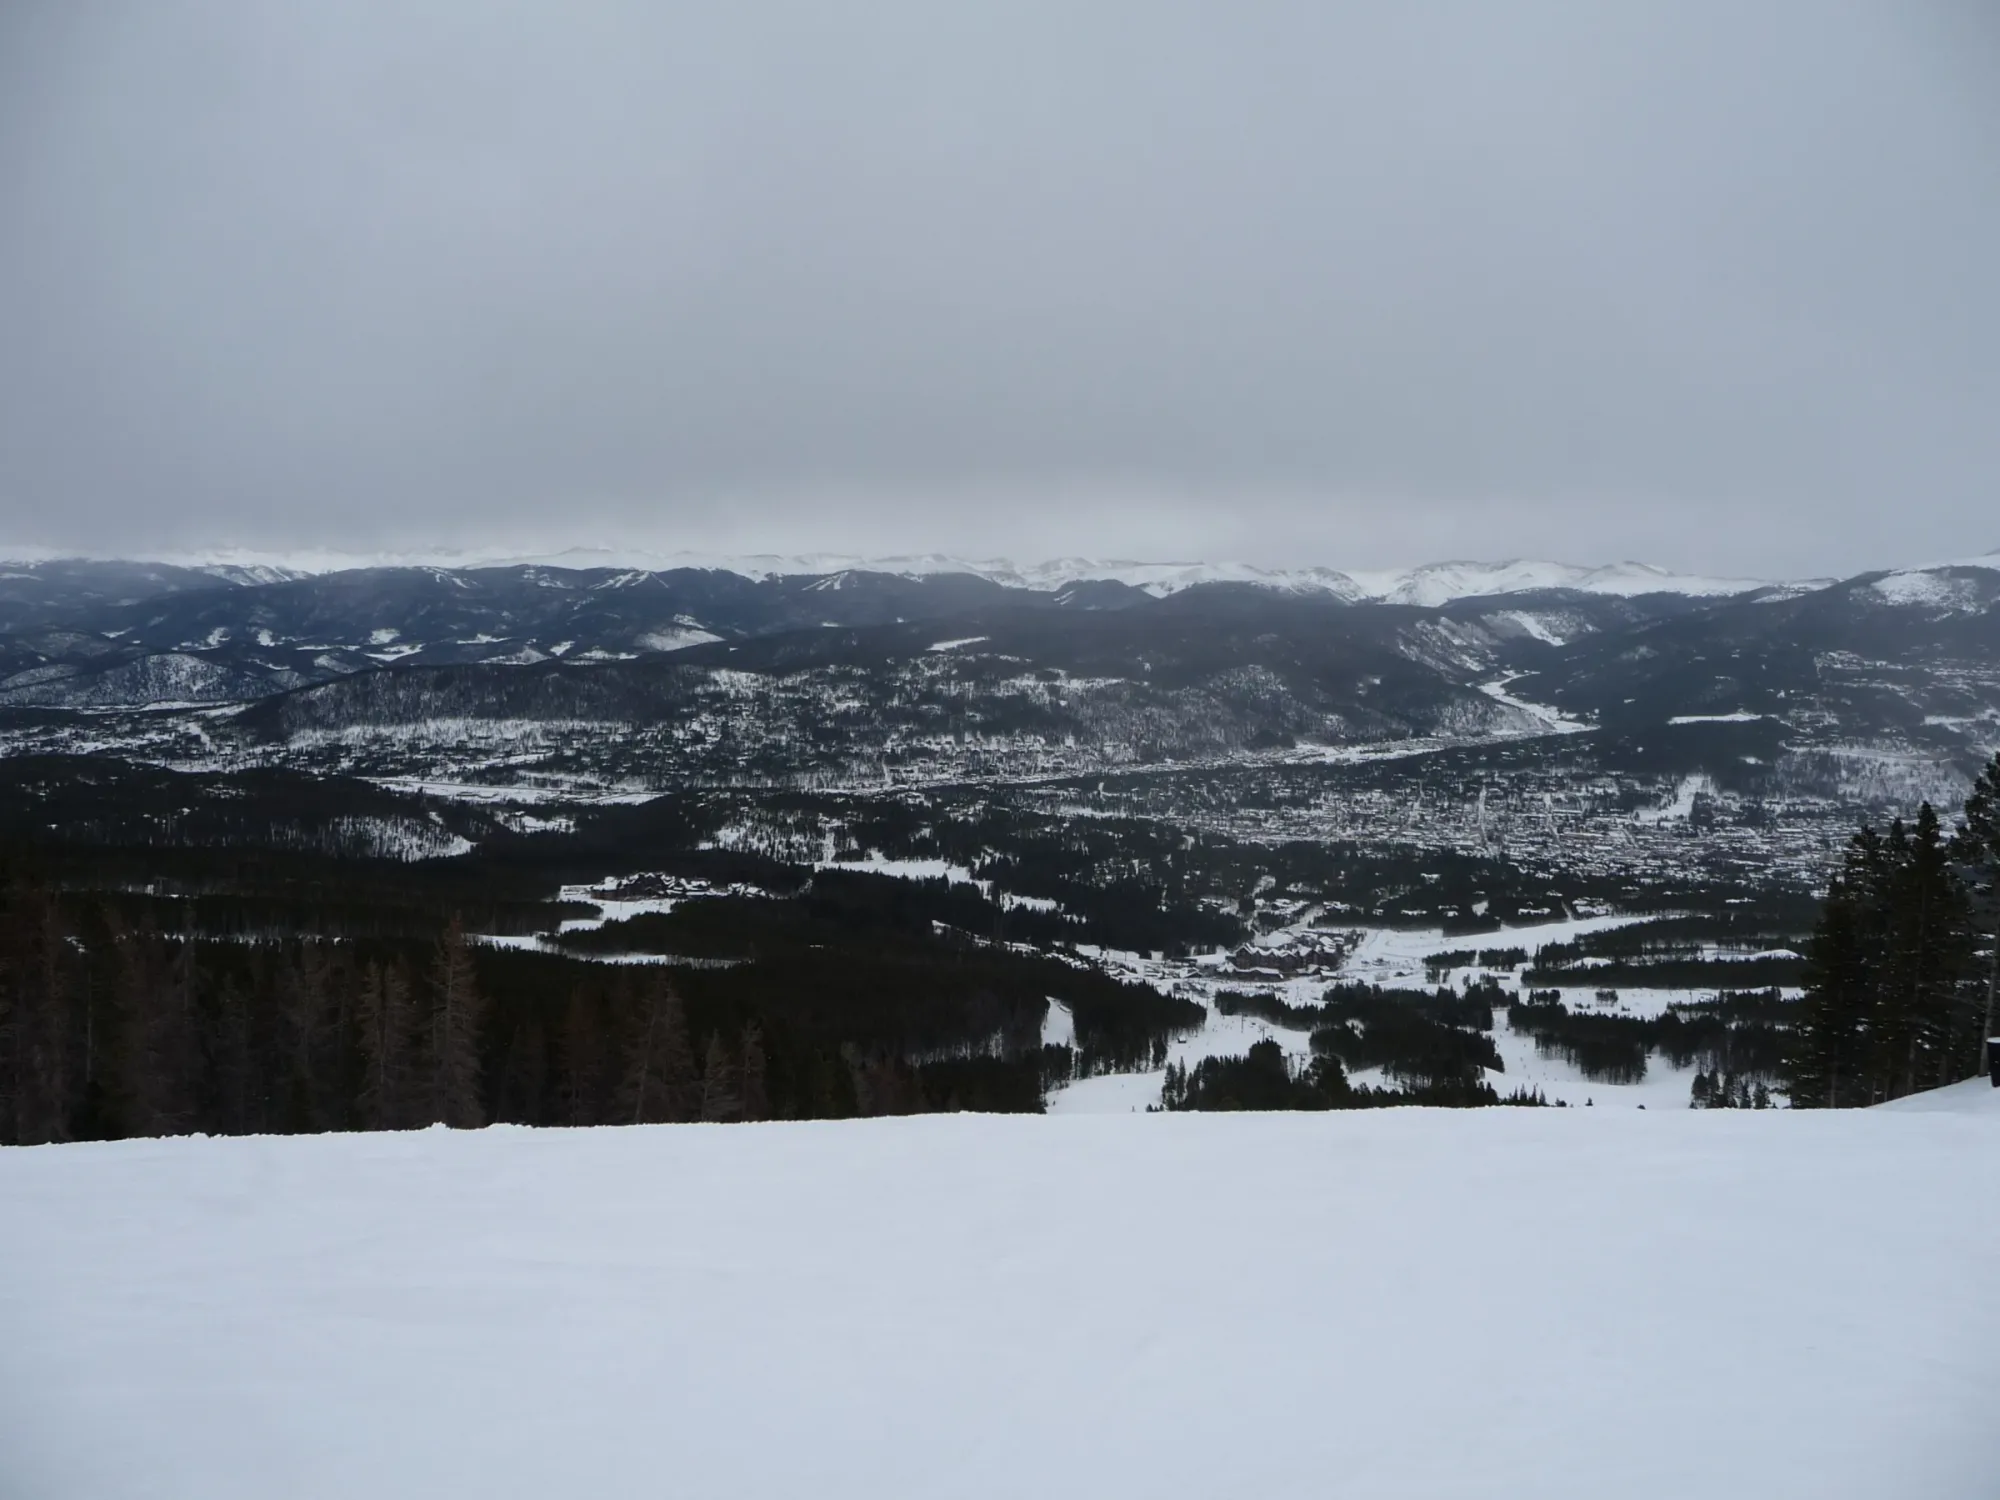 Colorado skiing trip recap